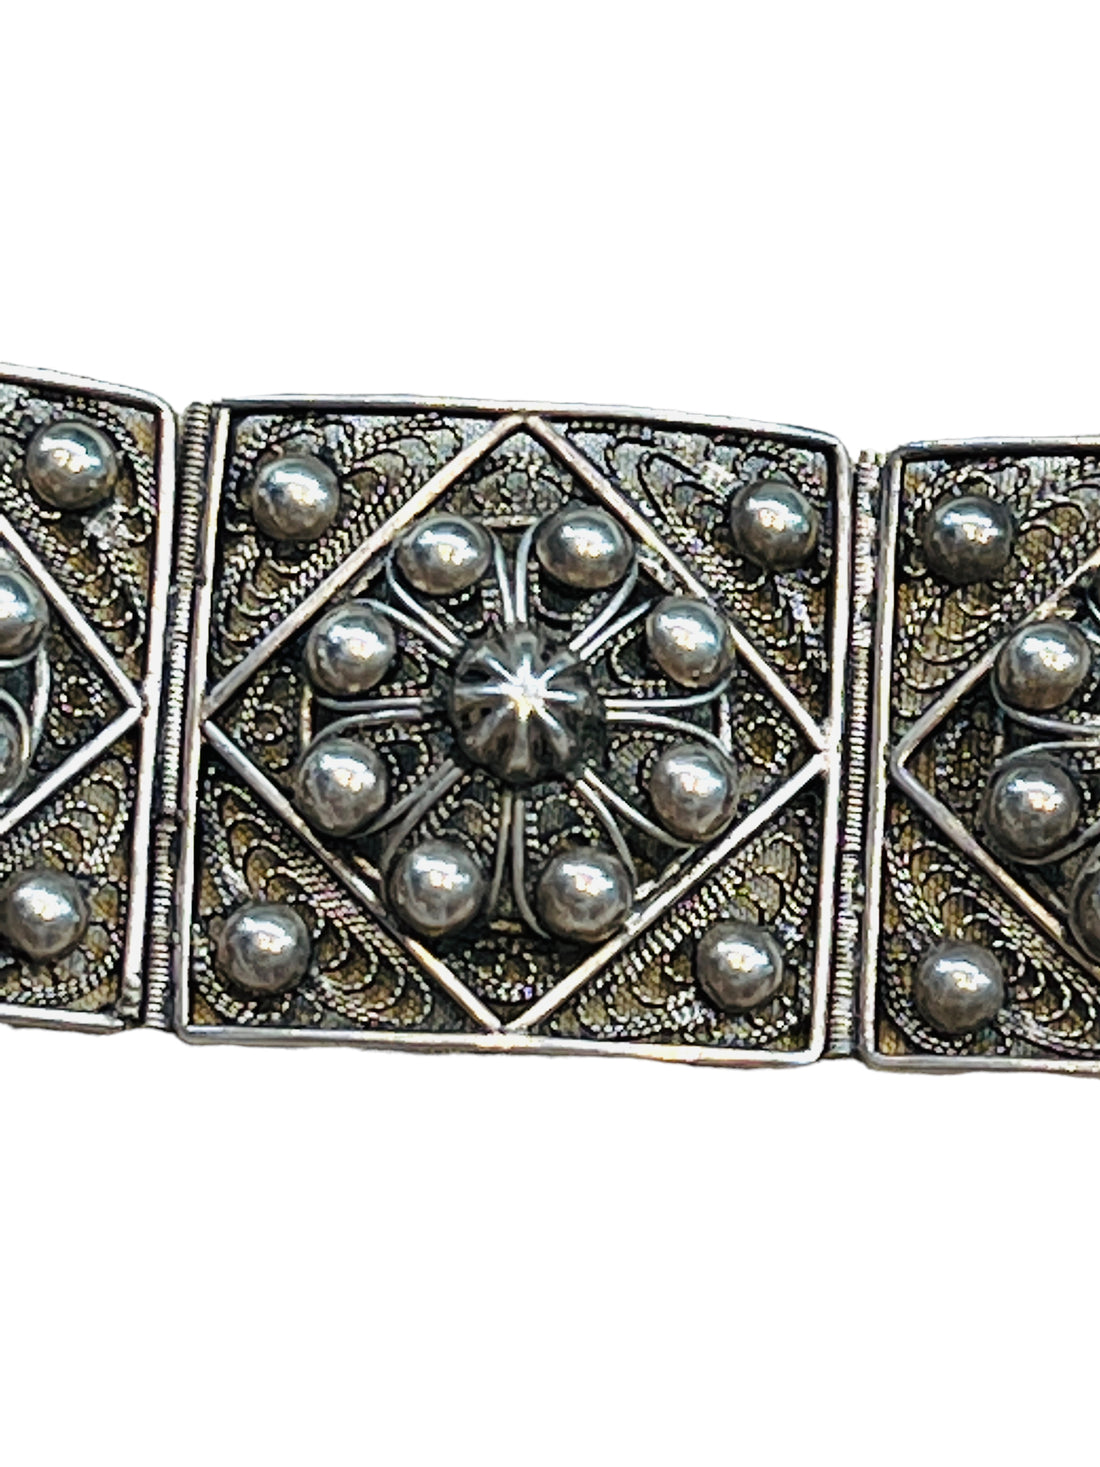 Sterling Cuff Bracelet with Flower Pattern